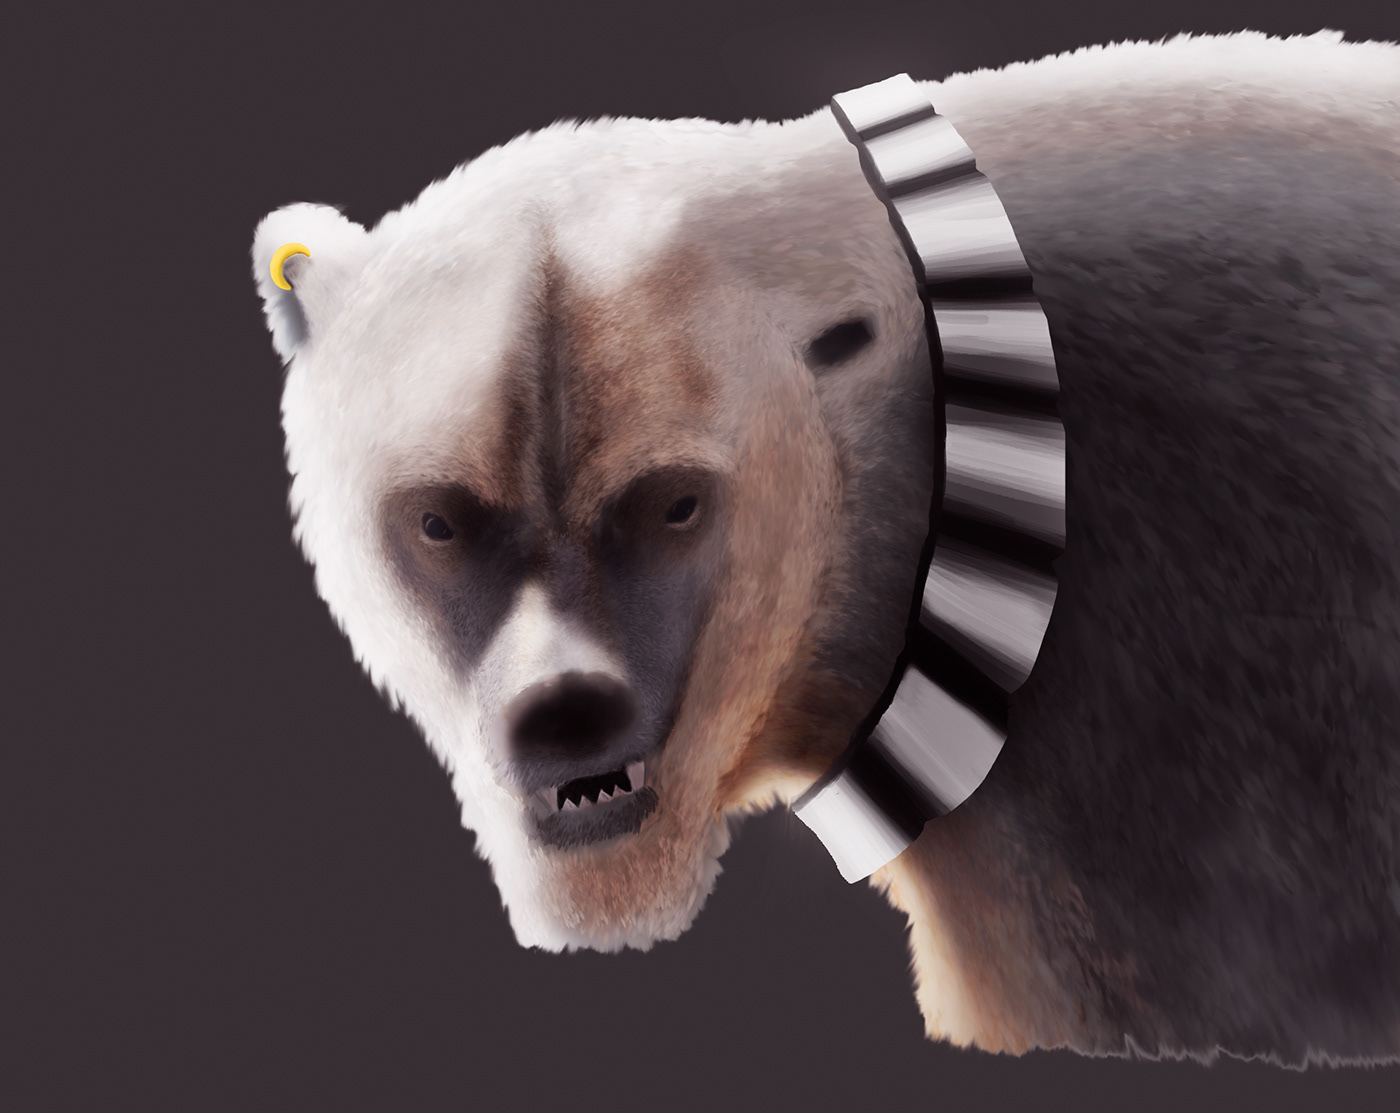 bear bear armor oso armadura oso polar oso polar armadura Polar Bear polar bear armor